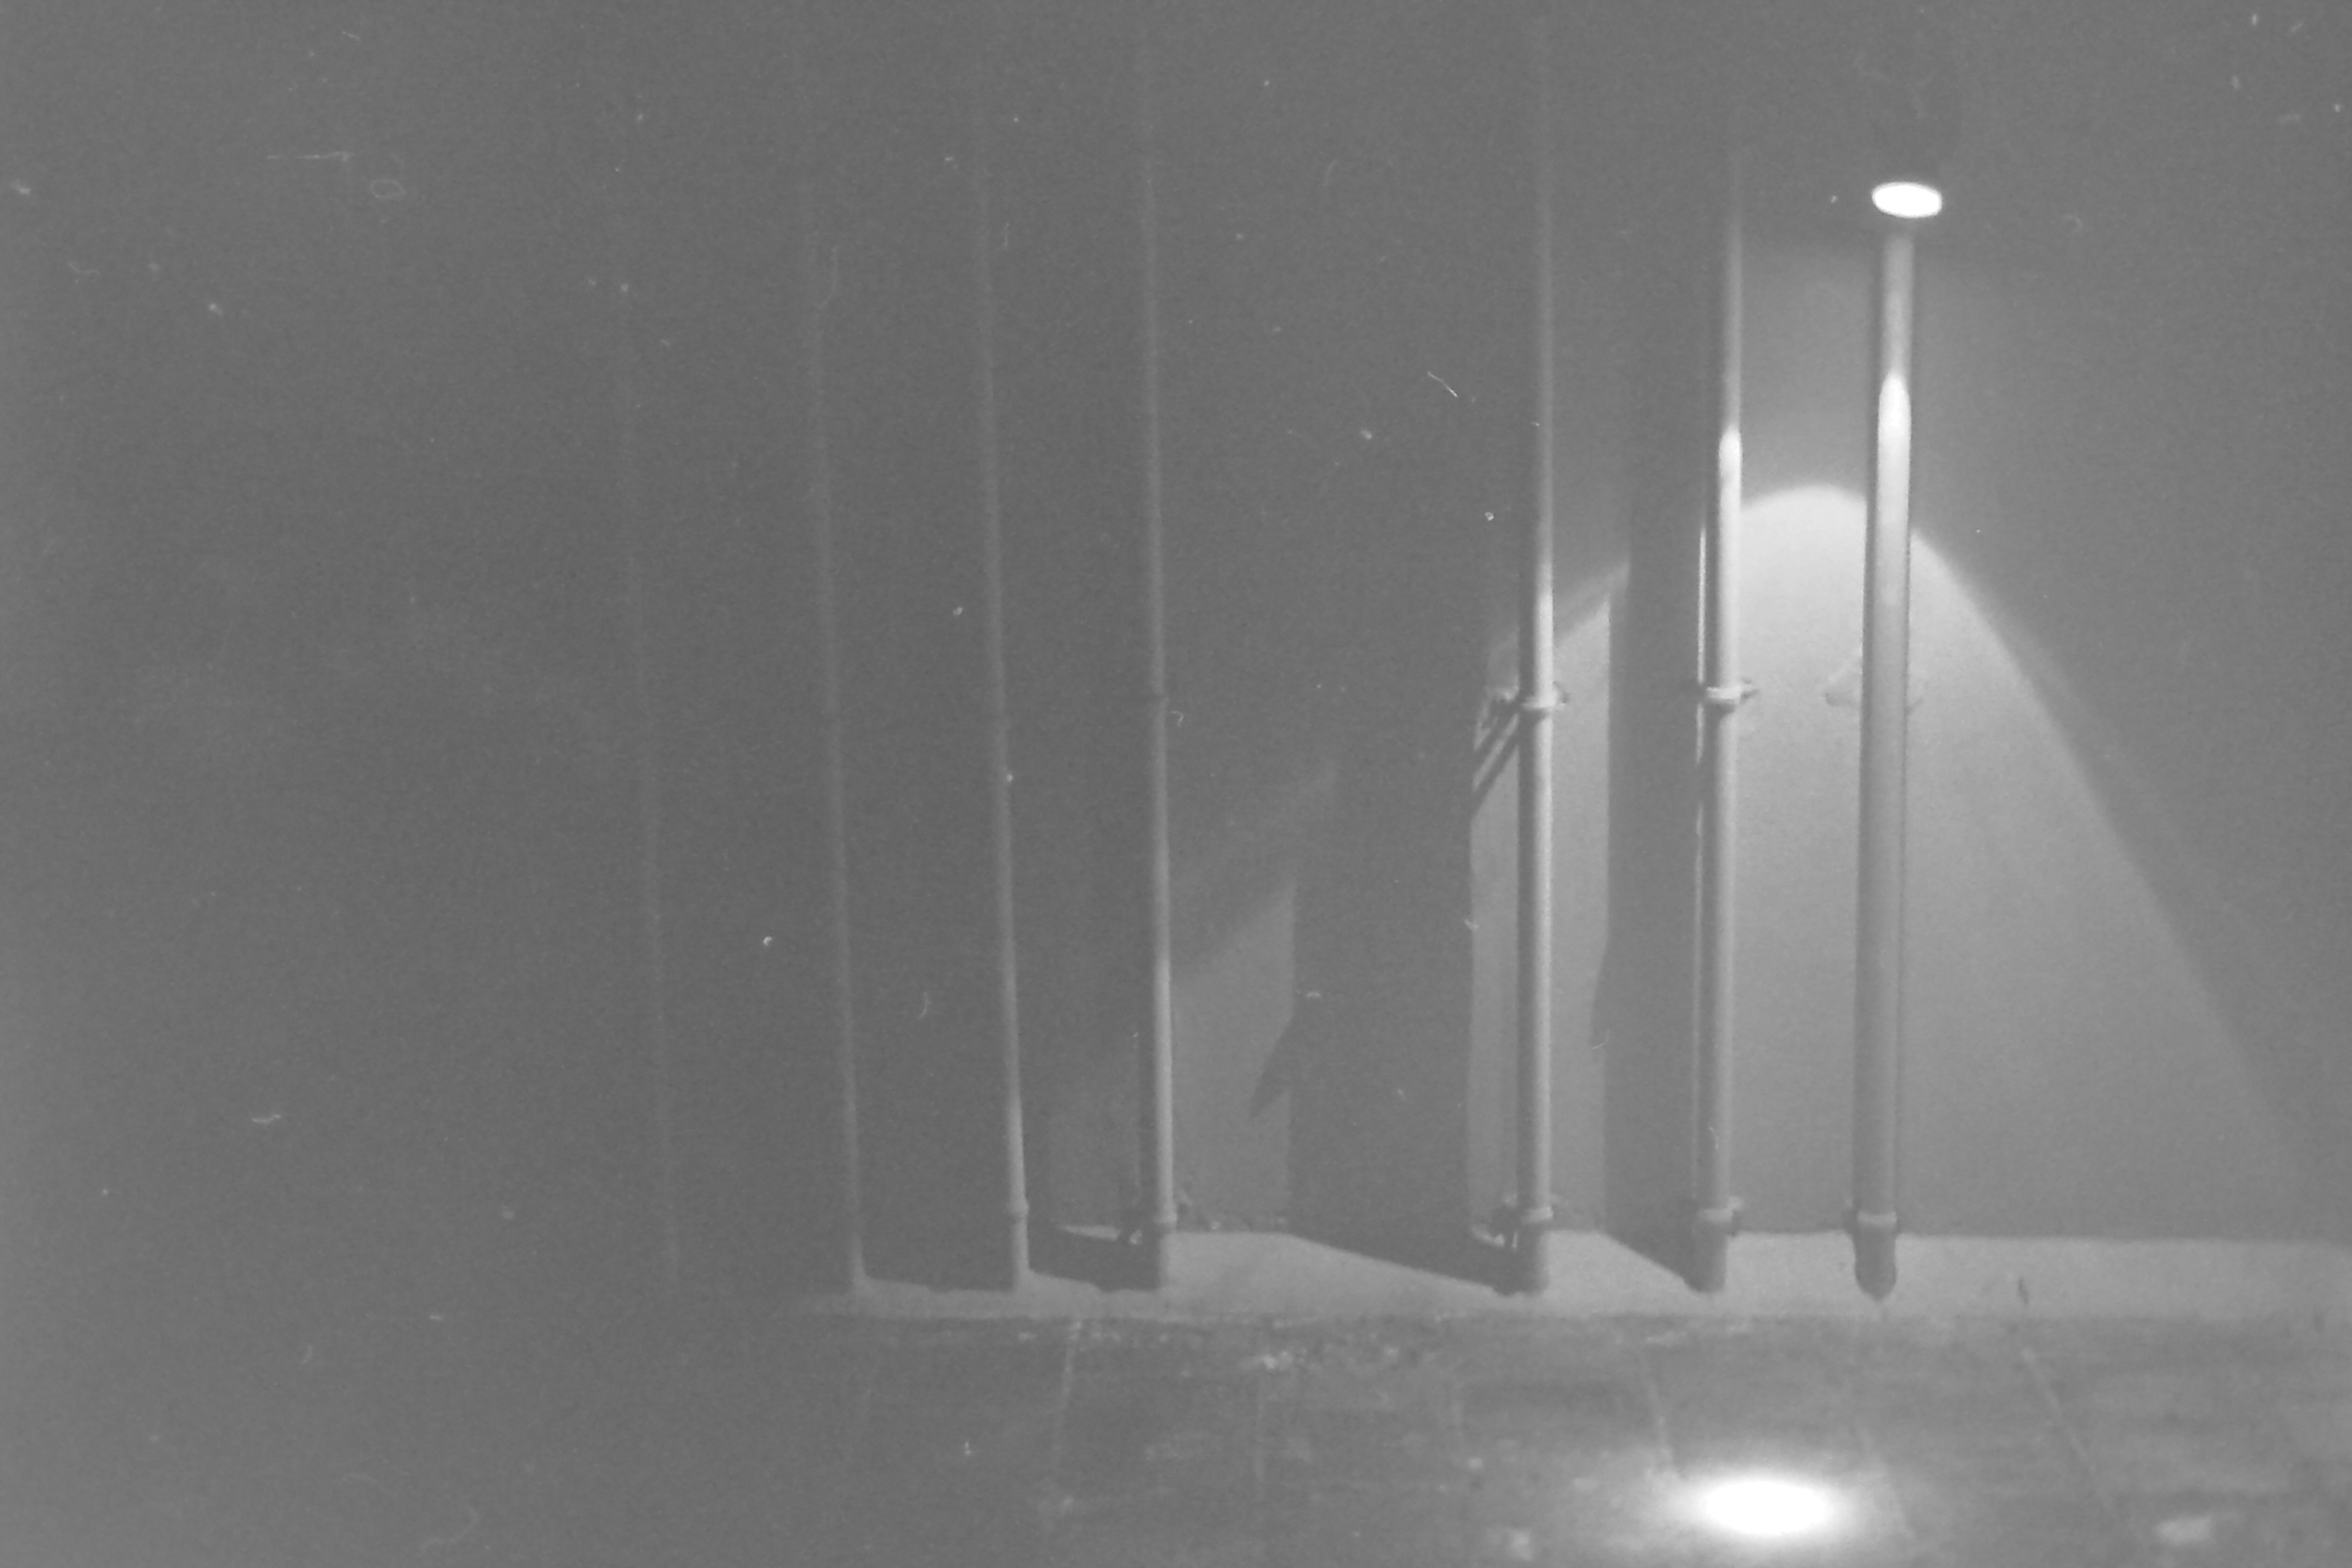 tuyaux de canalisation verticaux éclairés par un spotlight dans la nuit de pondichéry inde en noir et blanc